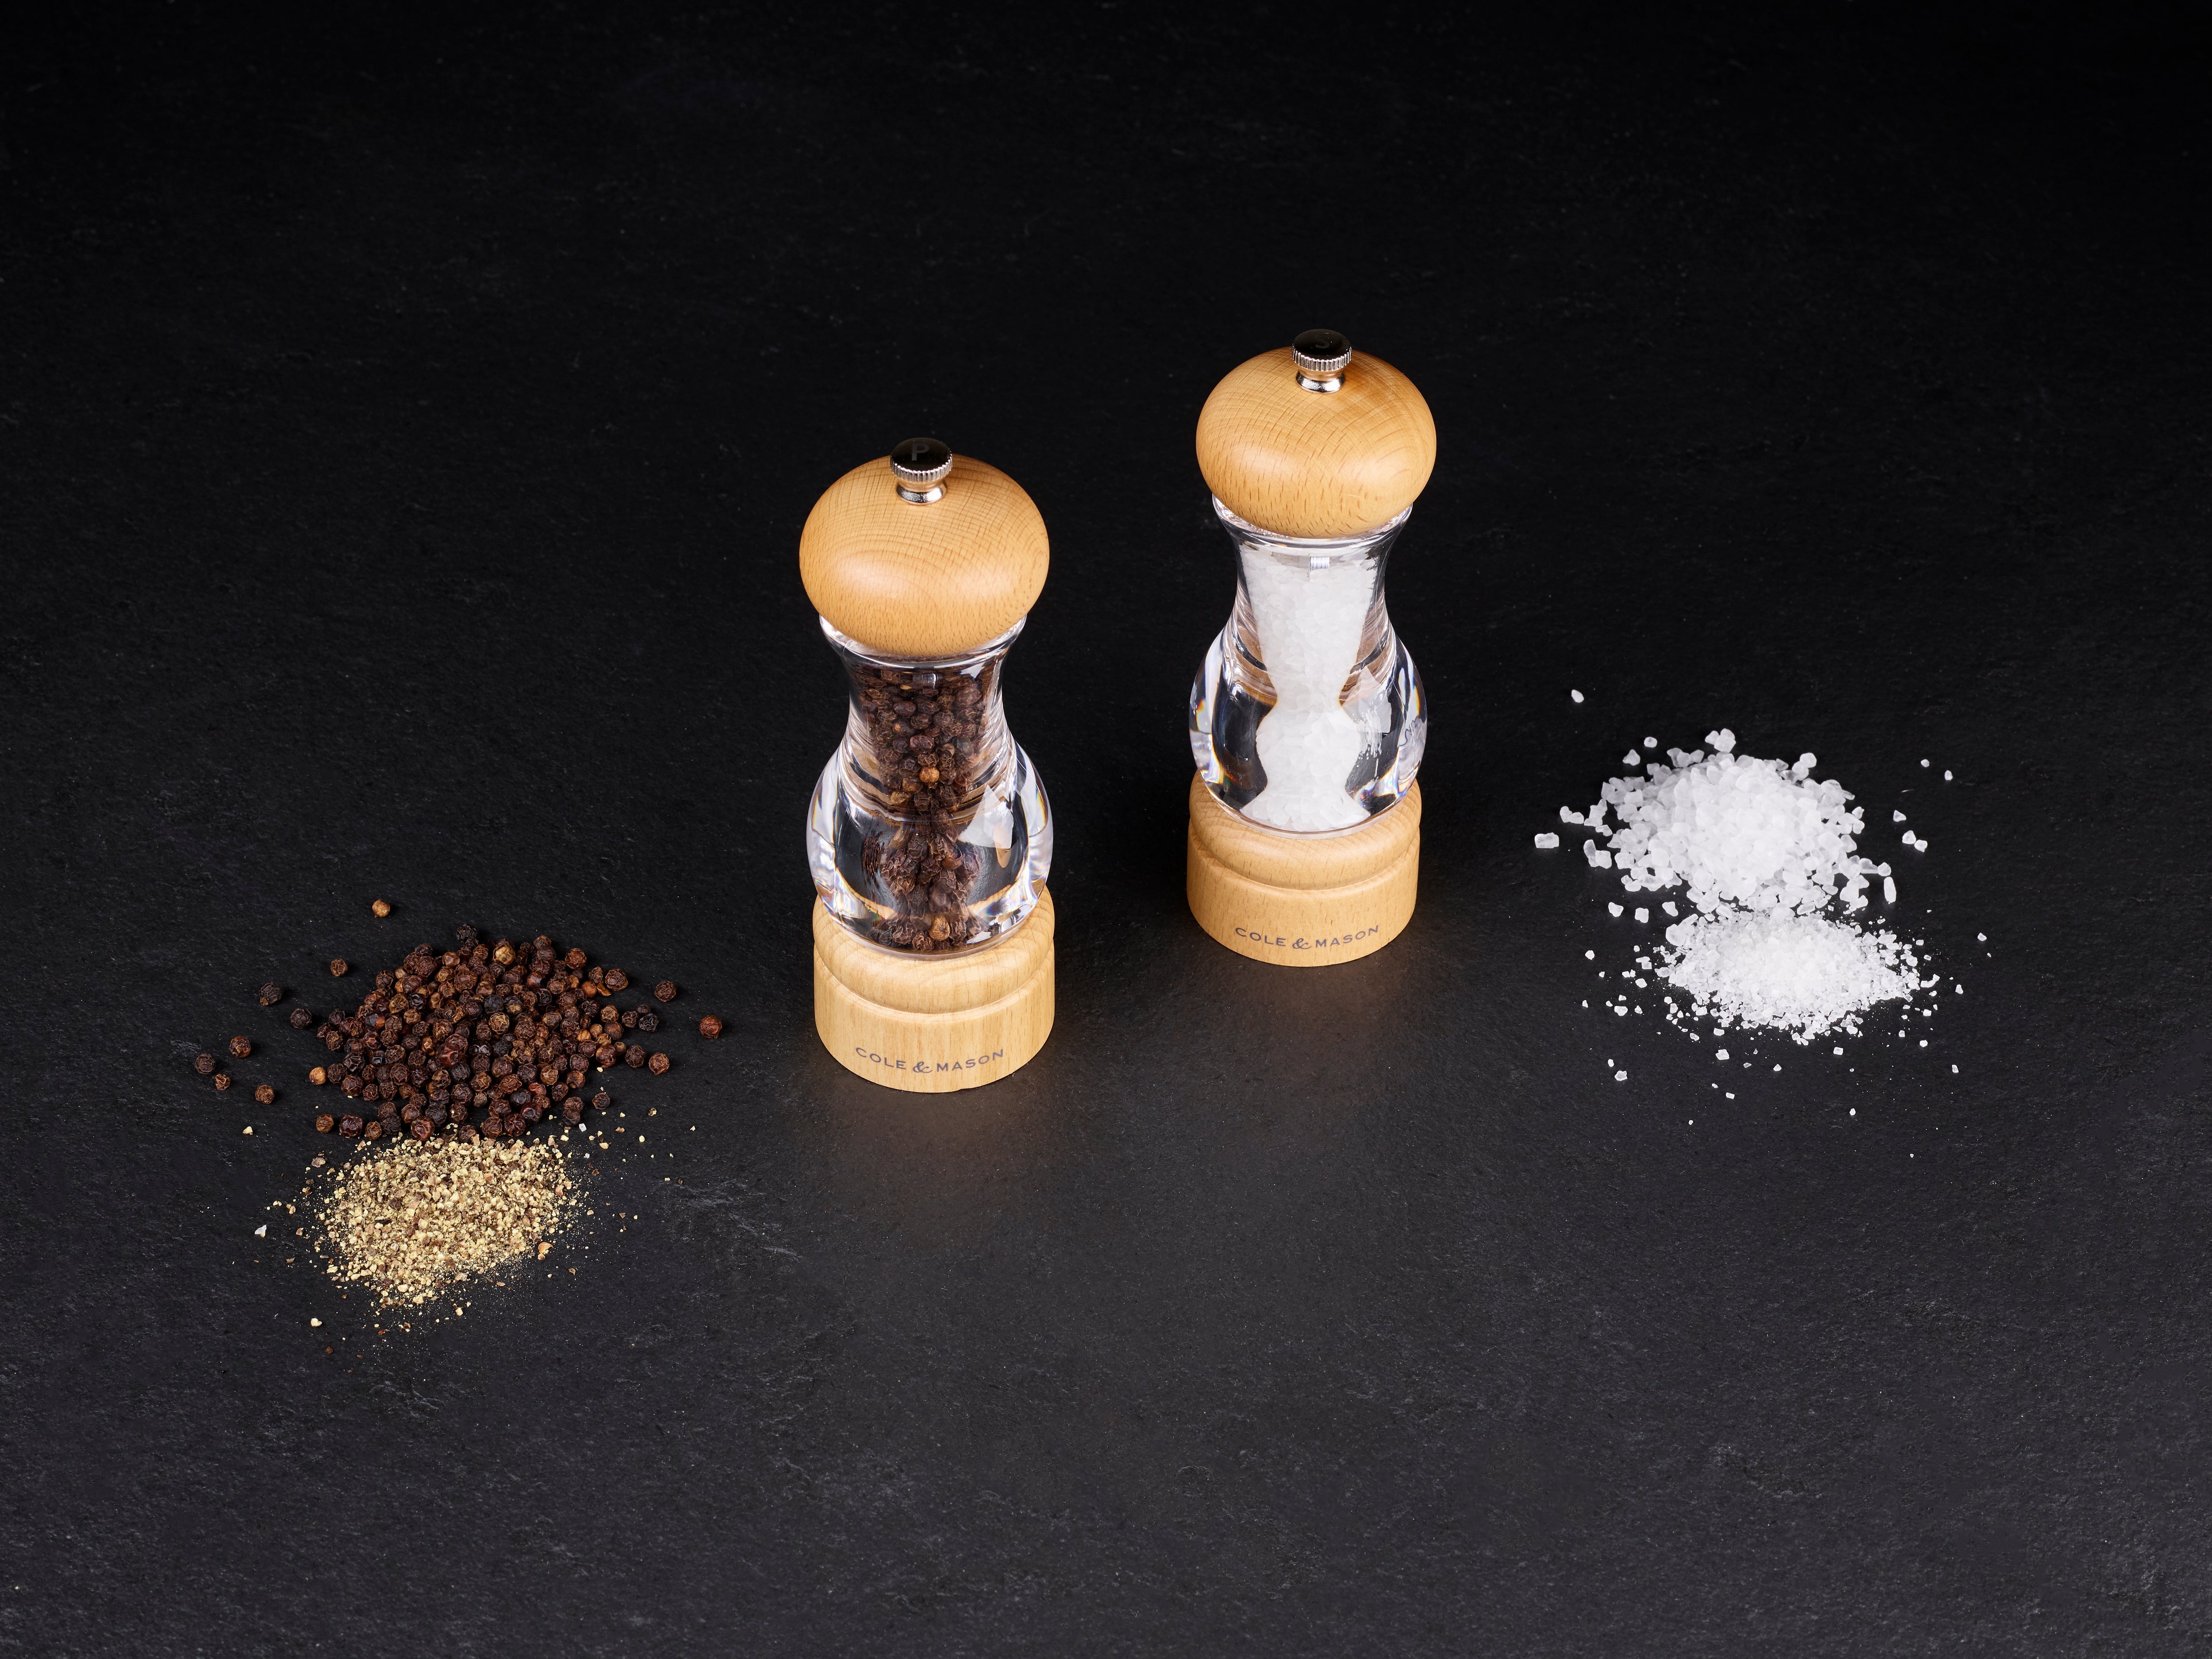 Peppermate Salt and Pepper Grinder Set, Spice Up Your Cooking, 2 in 1 Combo Salt and Pepper Grinder, Stainless Steel Body, Adjus